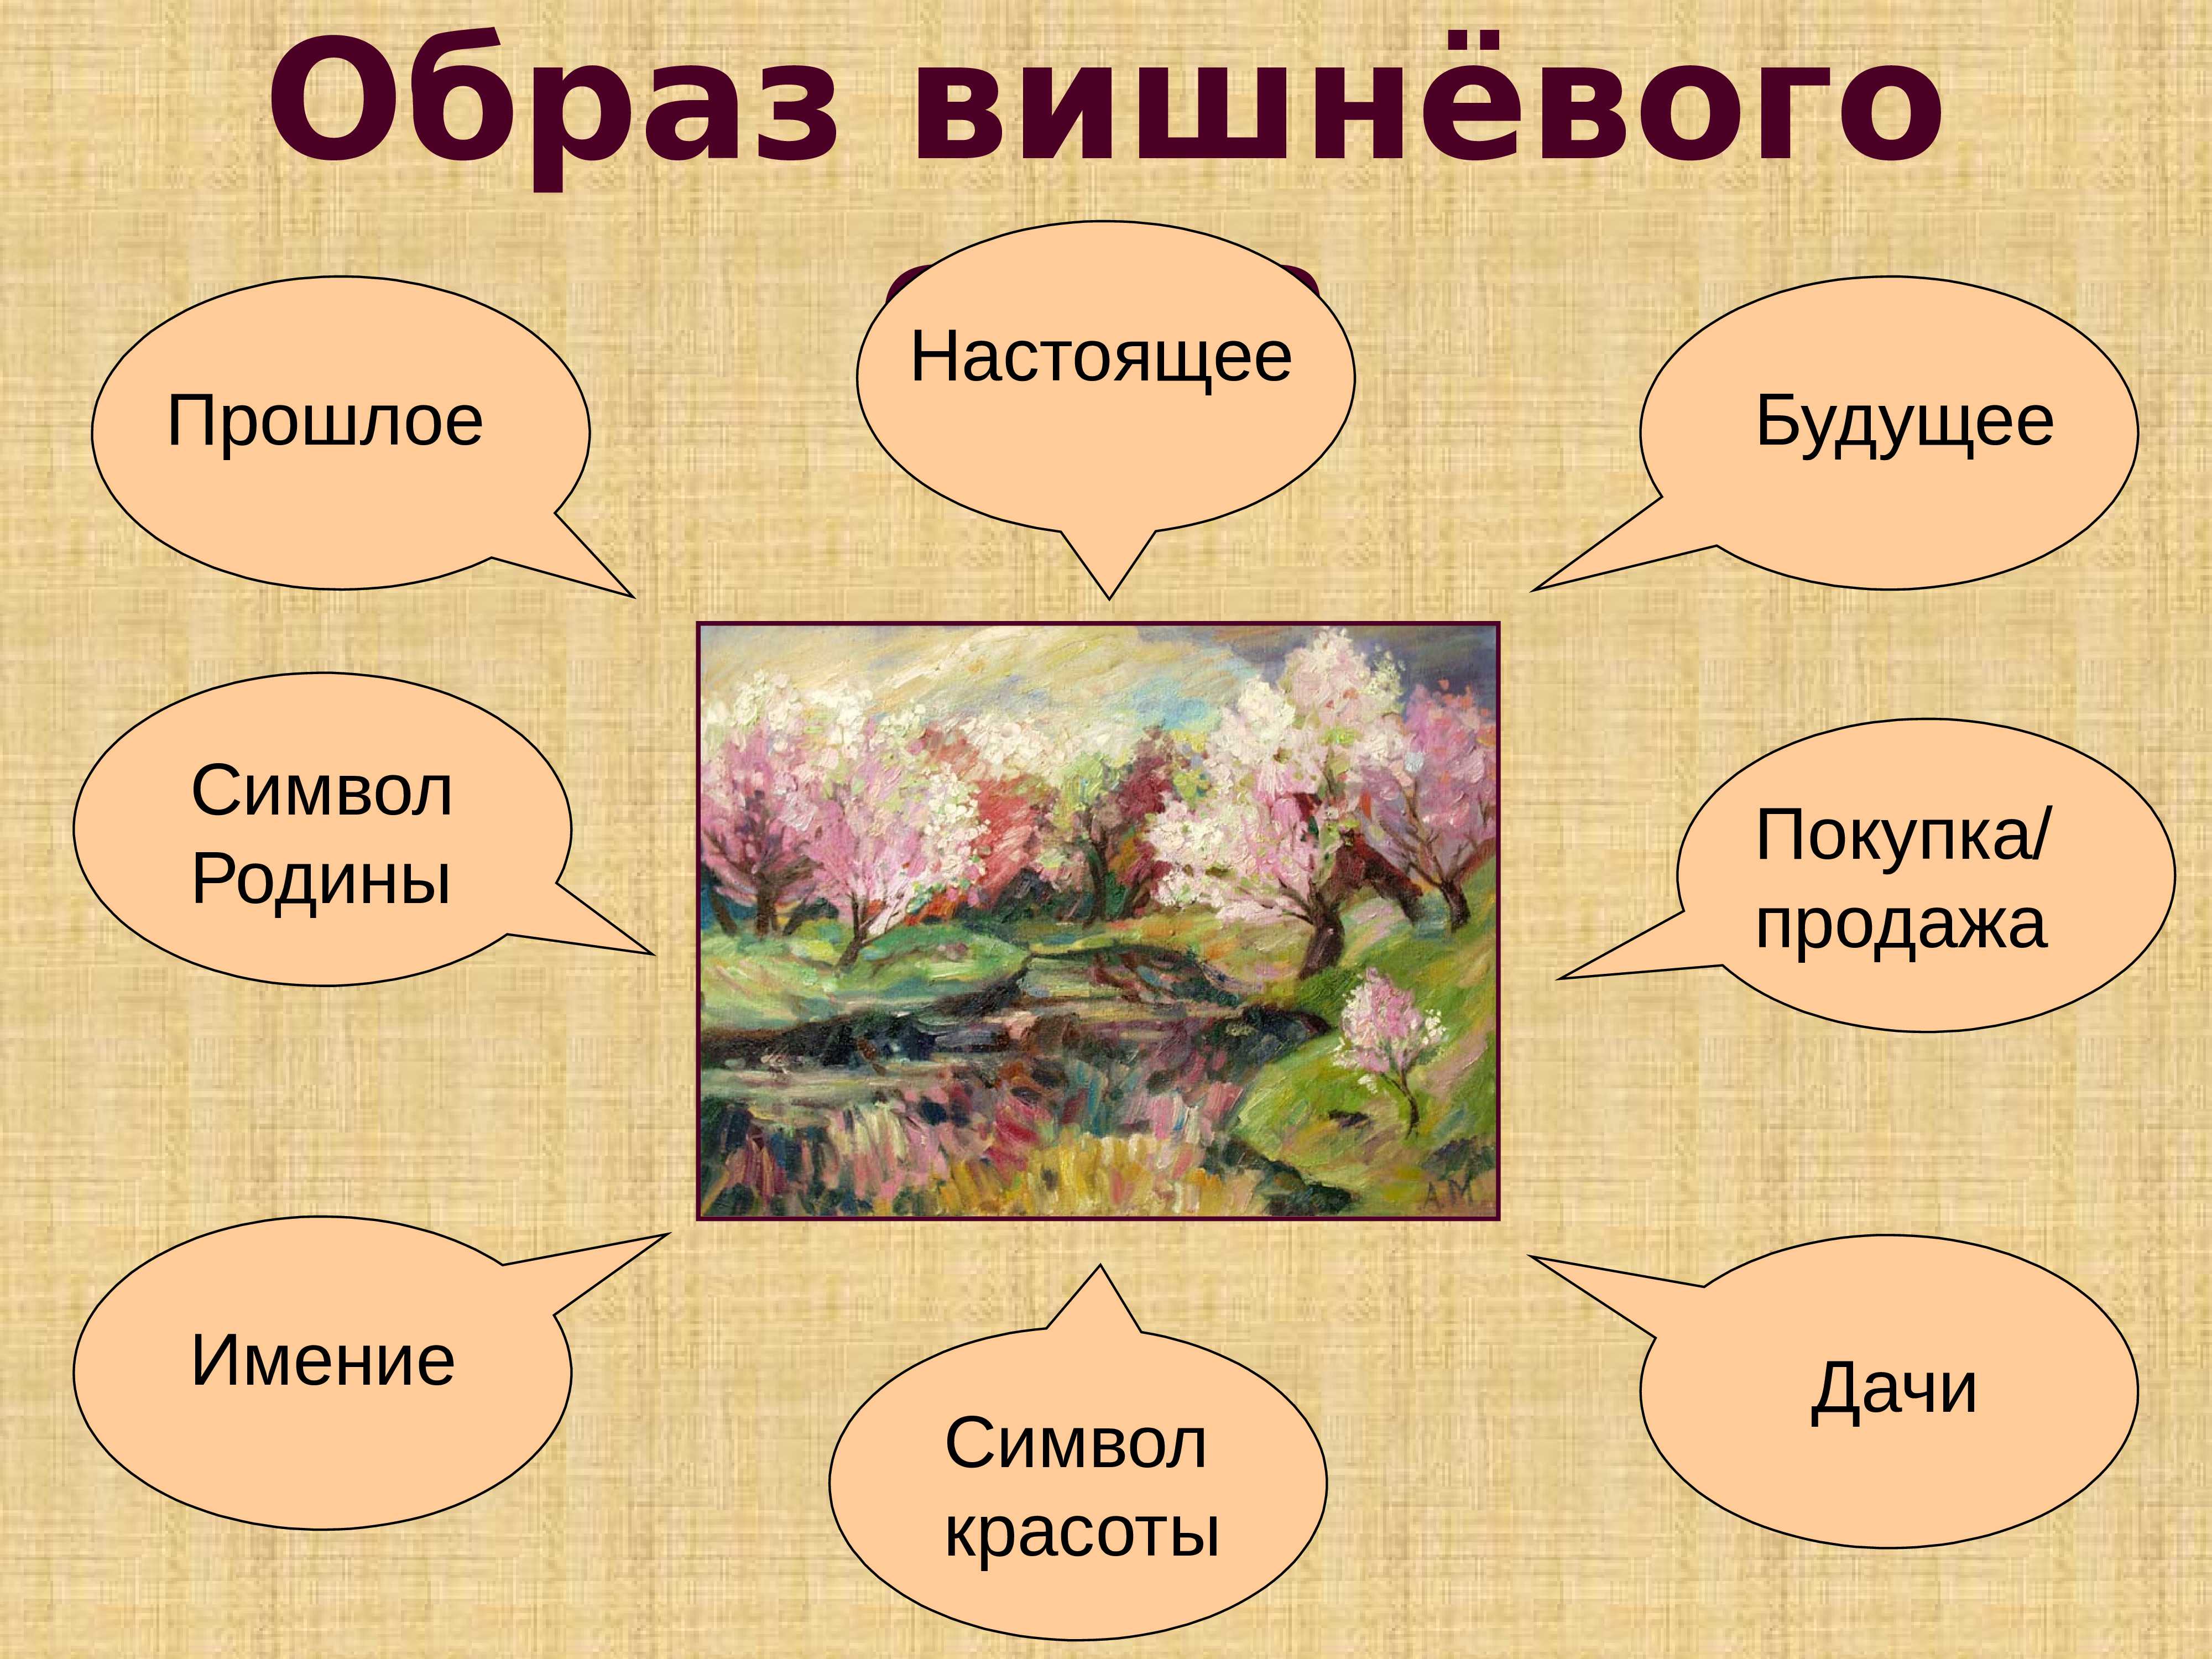 Судьбы героев вишневого сада. Вишневый СКД система образов. Образ вишневого сада. Вишневый сад презентация.